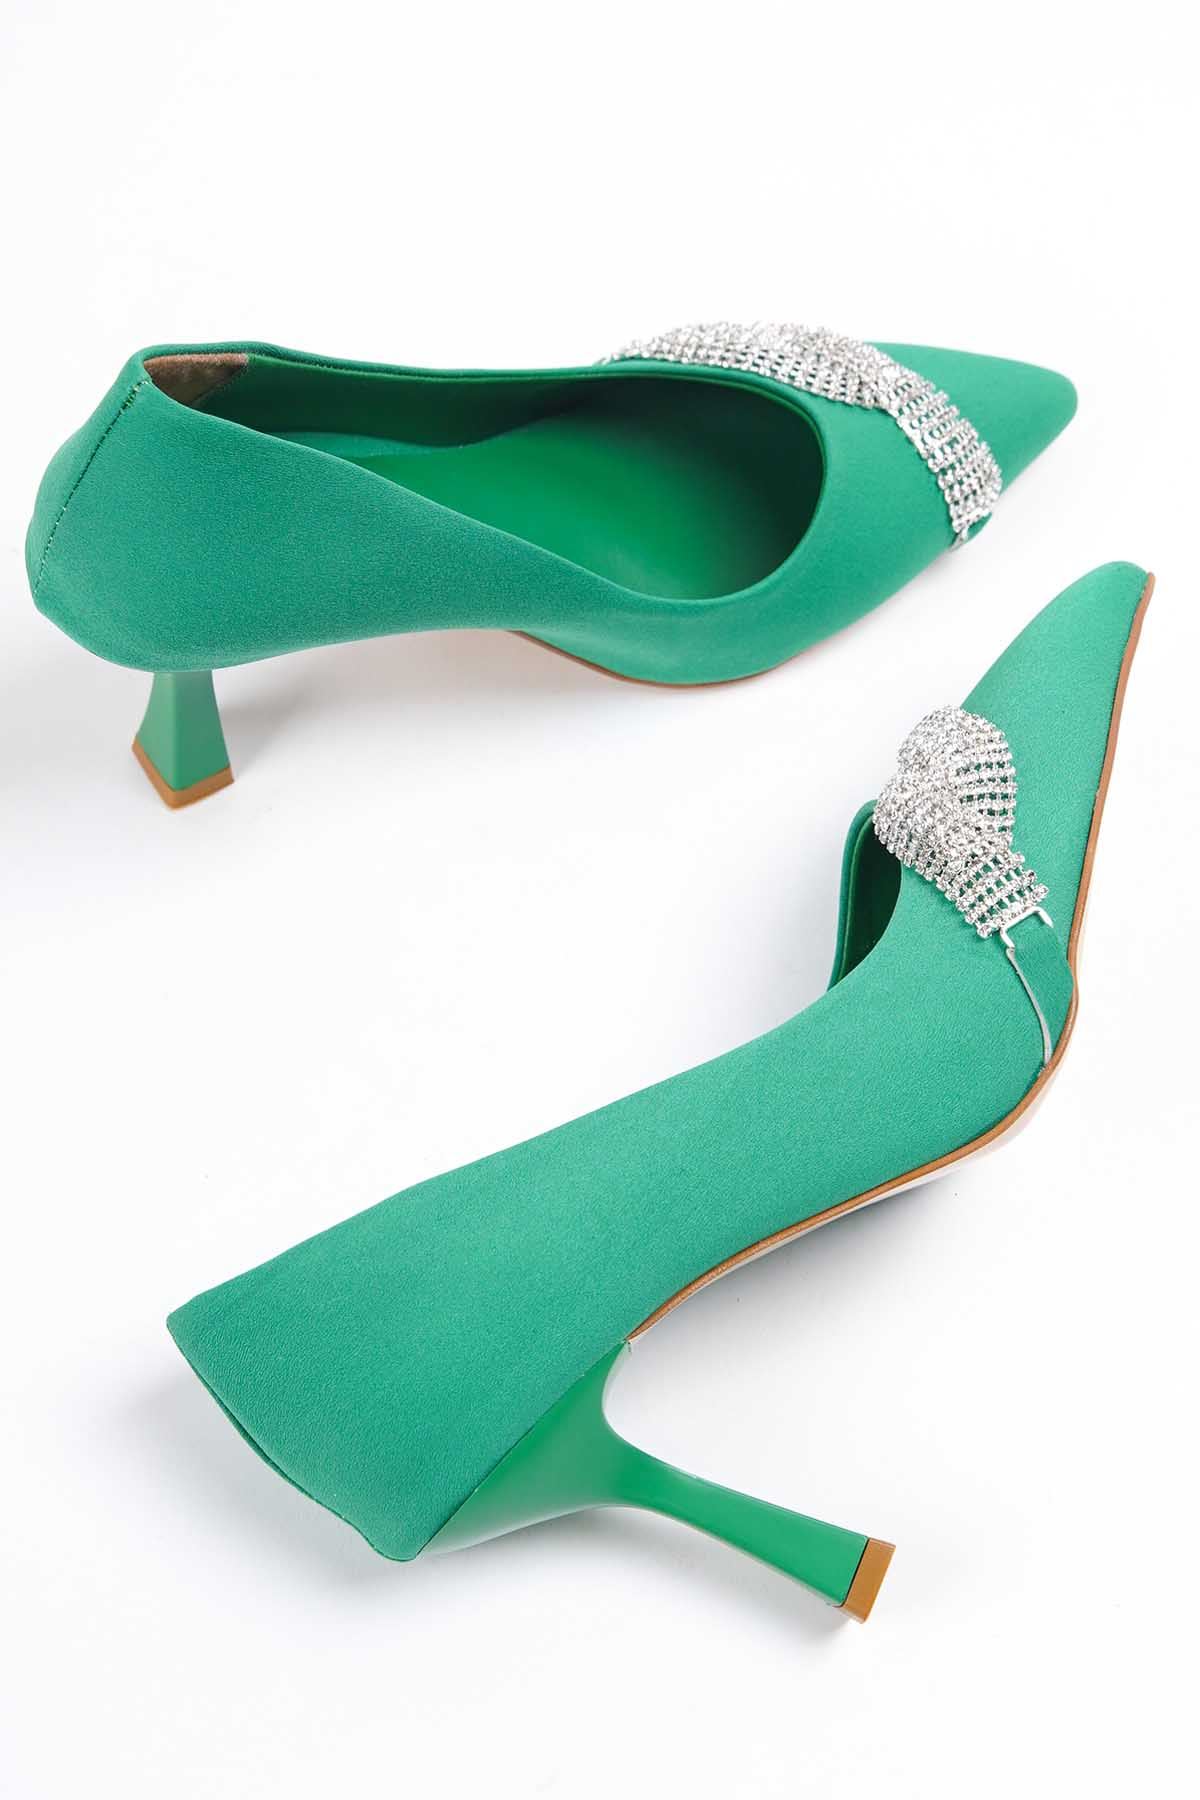 Kadın Jude Taşlı Stiletto  Ayakkabı - Yeşil